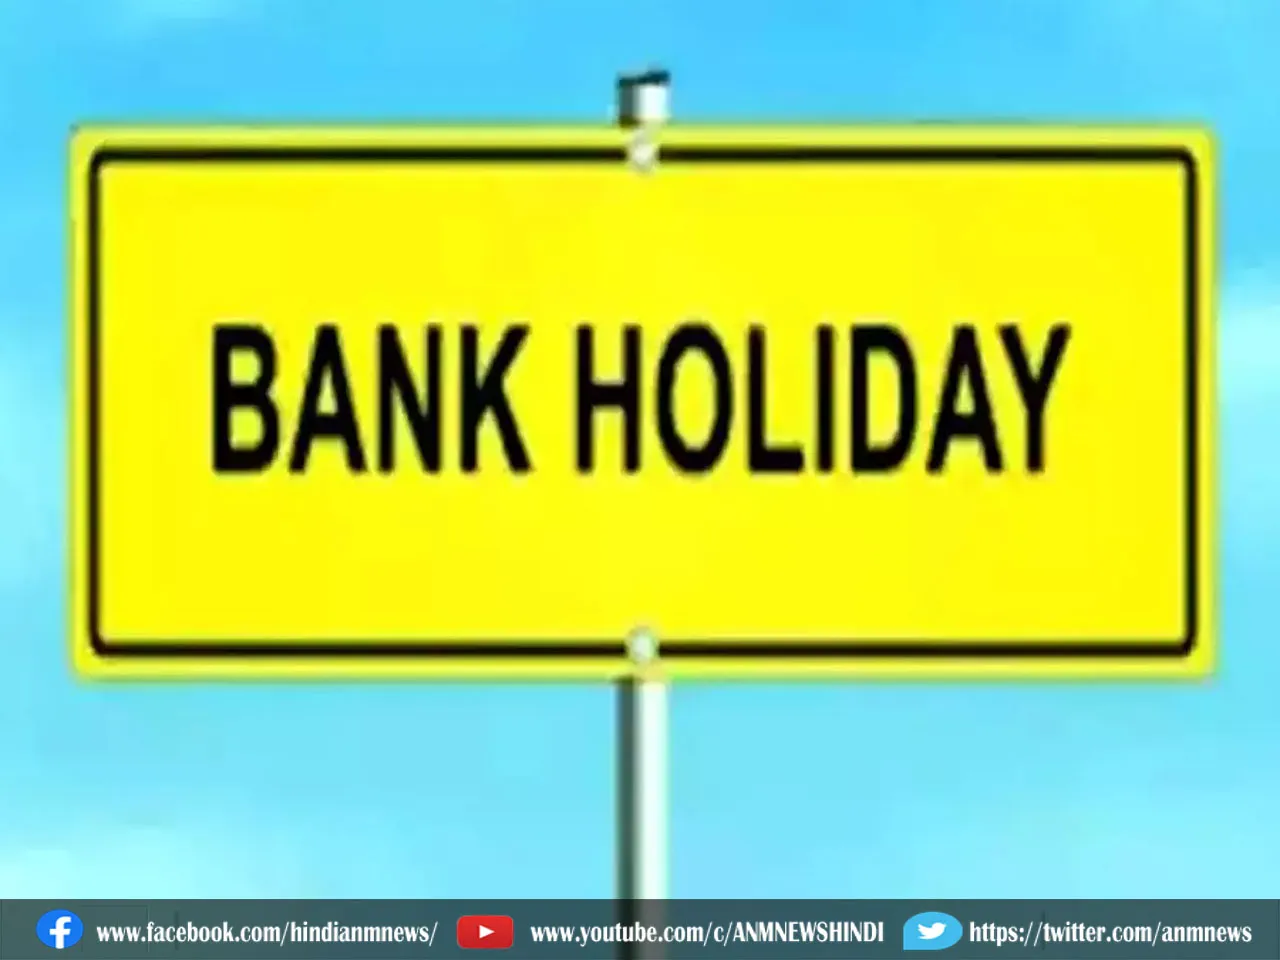 bank holidays